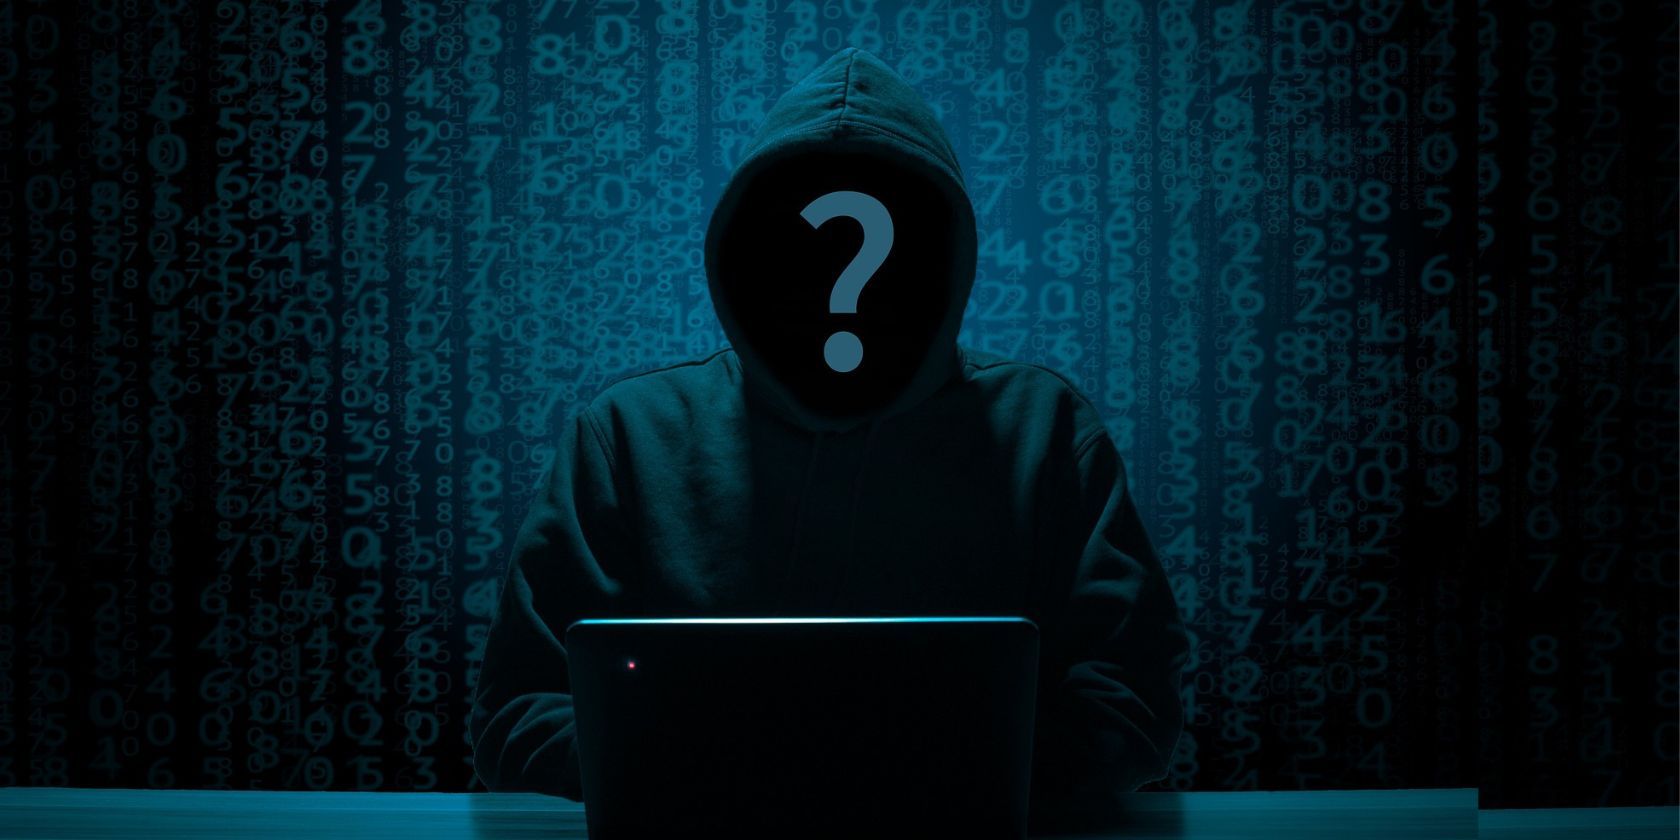 Un cybercriminel inconnu, en gilet, travaillant sur un ordinateur portable.  La scène est sombre, et le criminel qui nous fait face a un gros point d'interrogation devant lui.